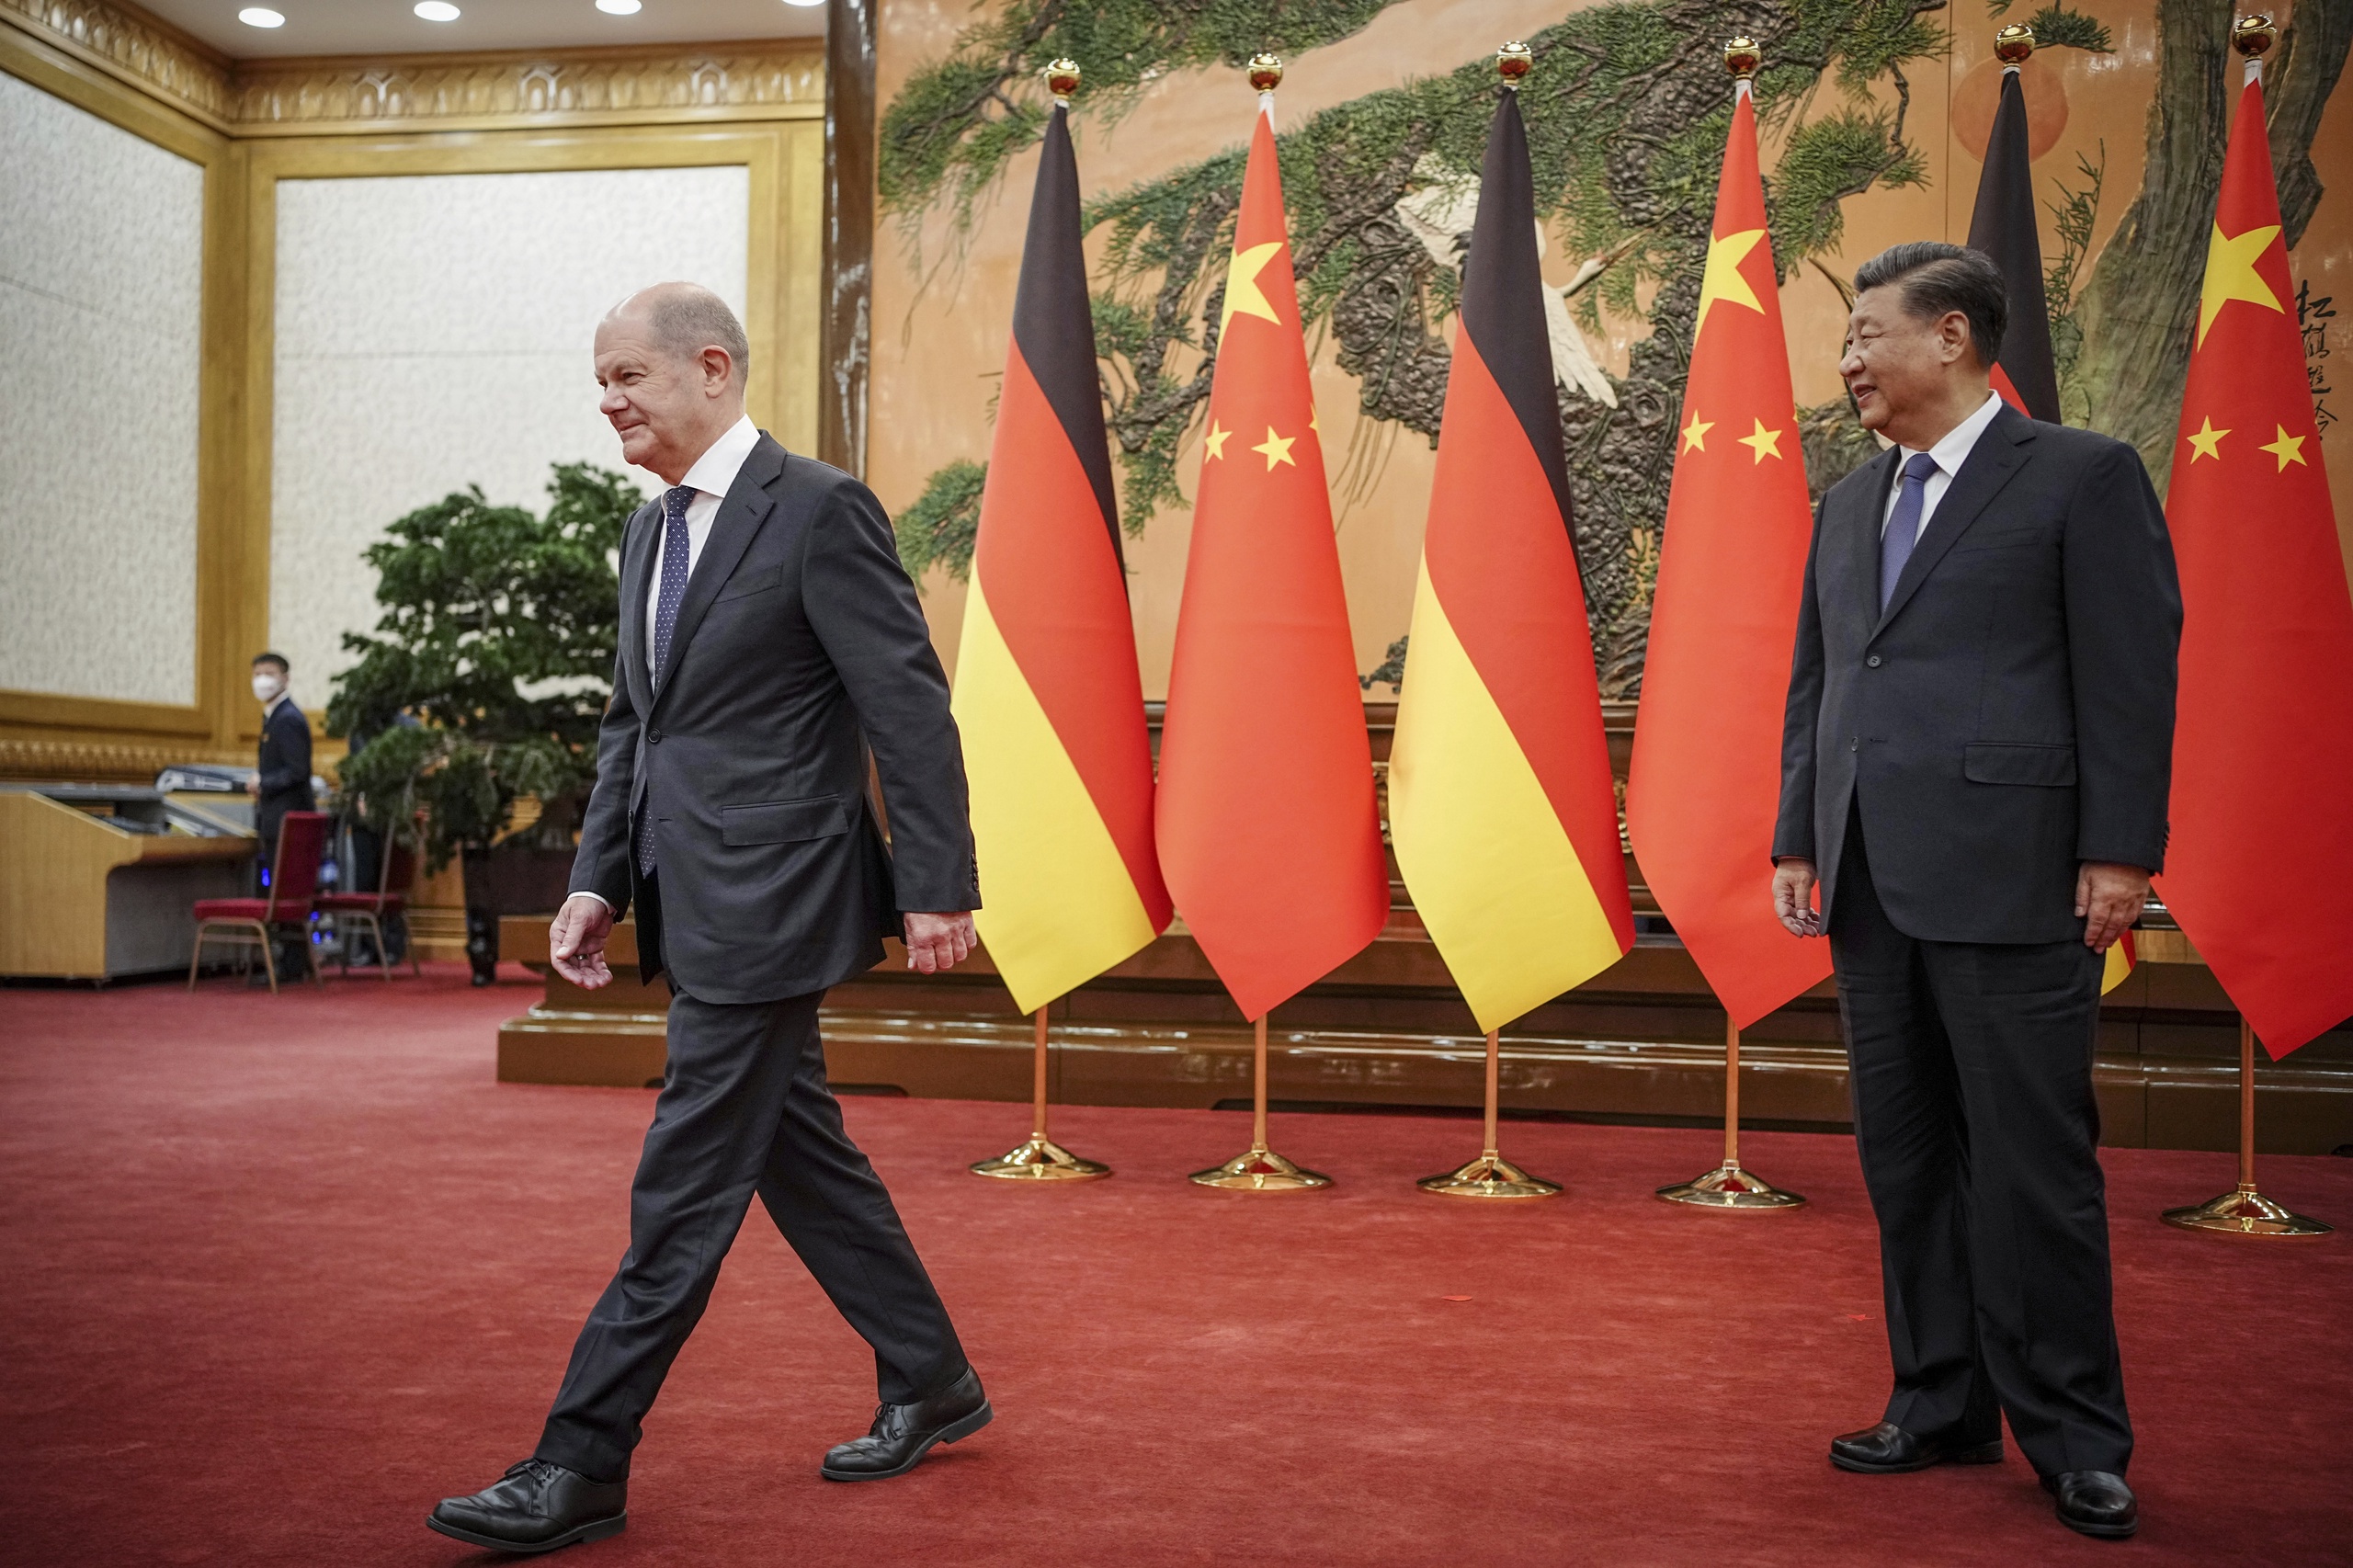 Het Duitse ministerie van Buitenlandse Zaken wil strenge regels instellen voor bedrijven die intensief zakendoen met China. Dat staat in een vertrouwelijk document dat persbureau Reuters heeft ingezien. 